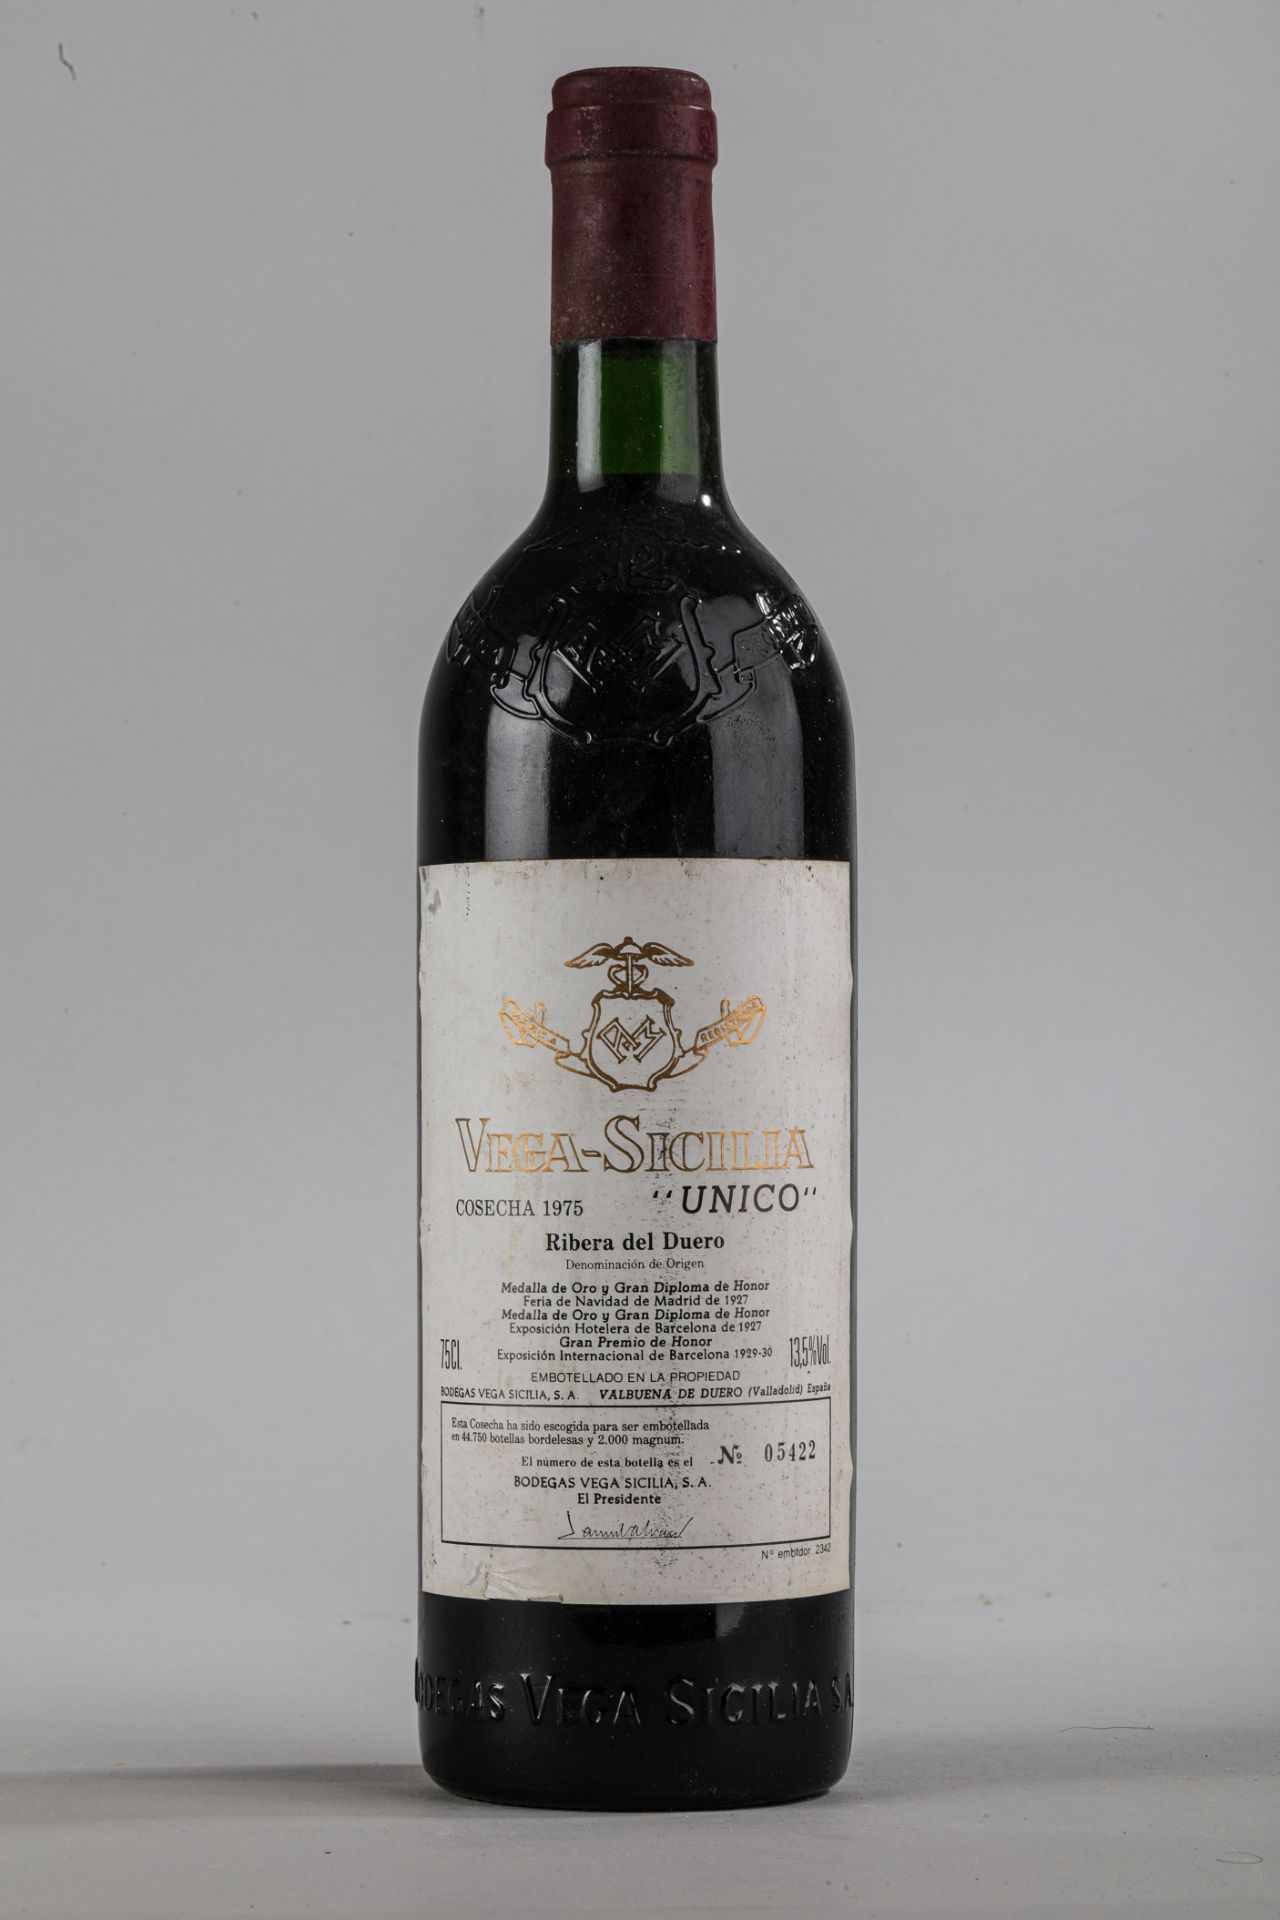 VEGA SICILIA UNICO. 1975.Ribera del Duero. Bouteille N°05422 sur production de 44 750 bouteilles. - Image 2 of 6